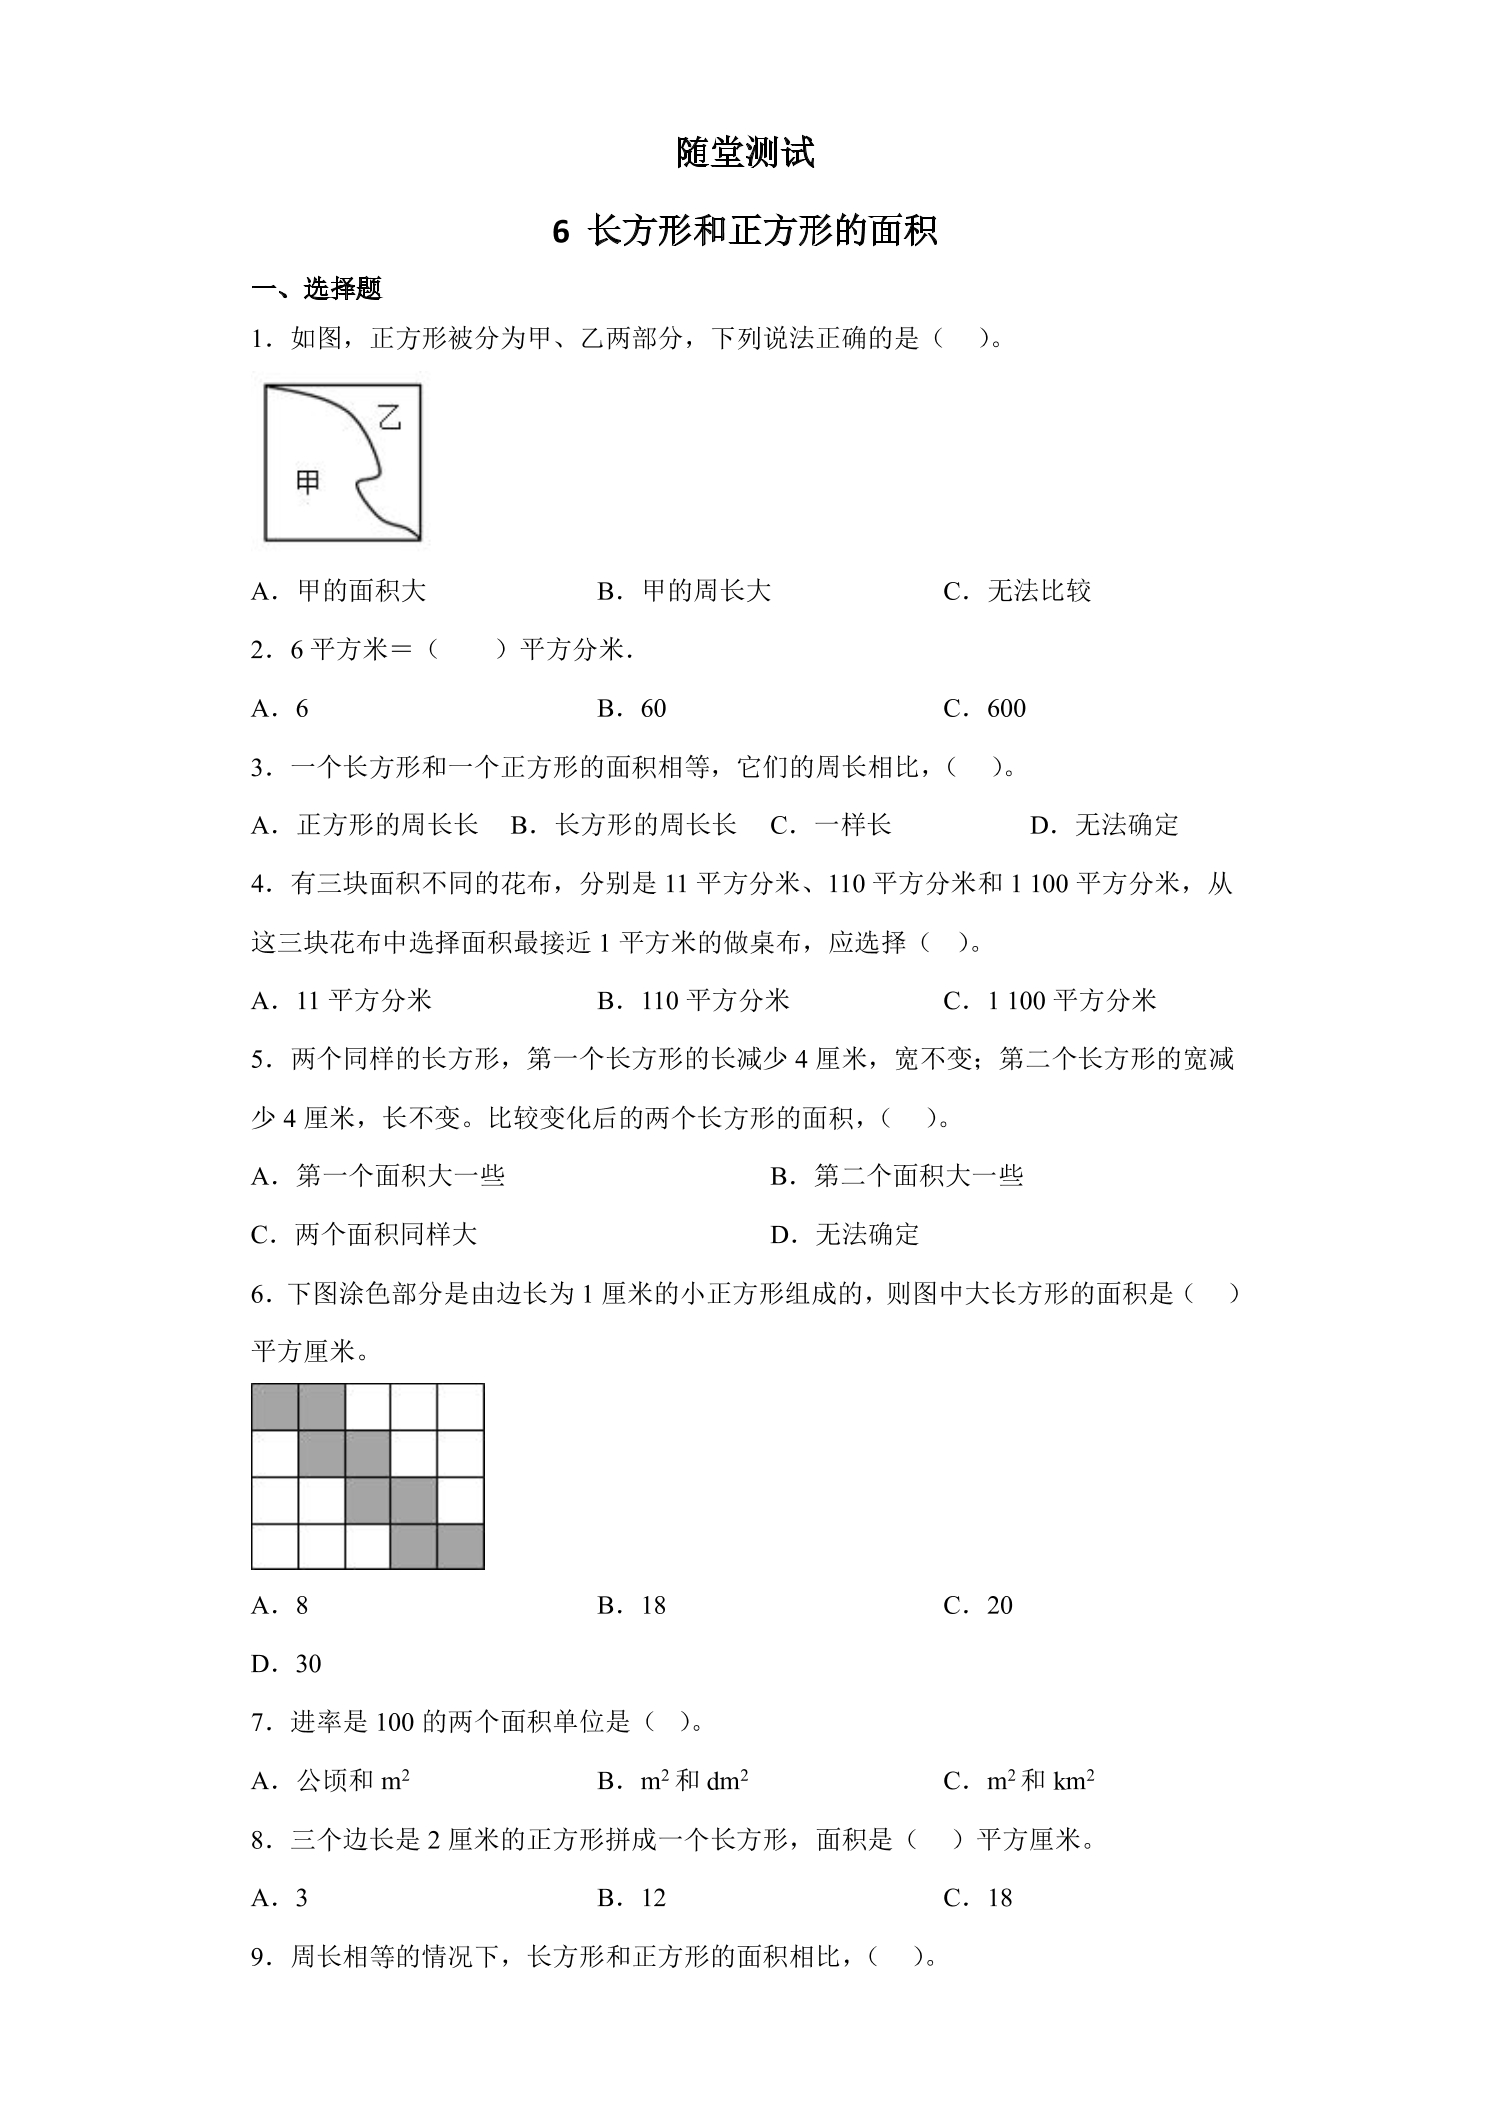 3年级数学苏教版下册随堂测试第6单元《长方形和正方形的面积》